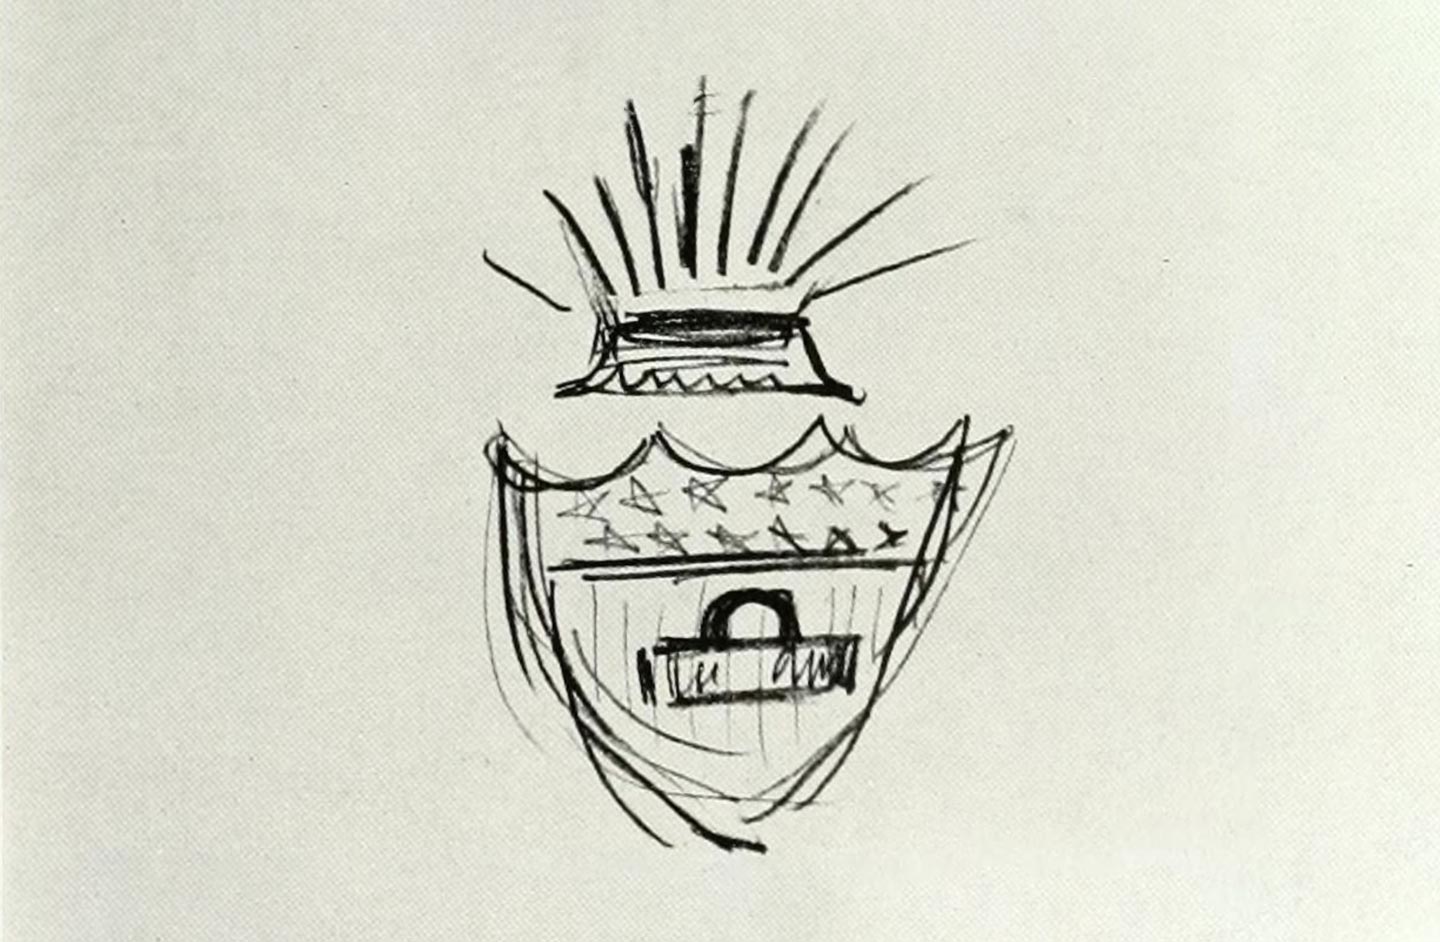 Initial sketch of original Crown Cork logo